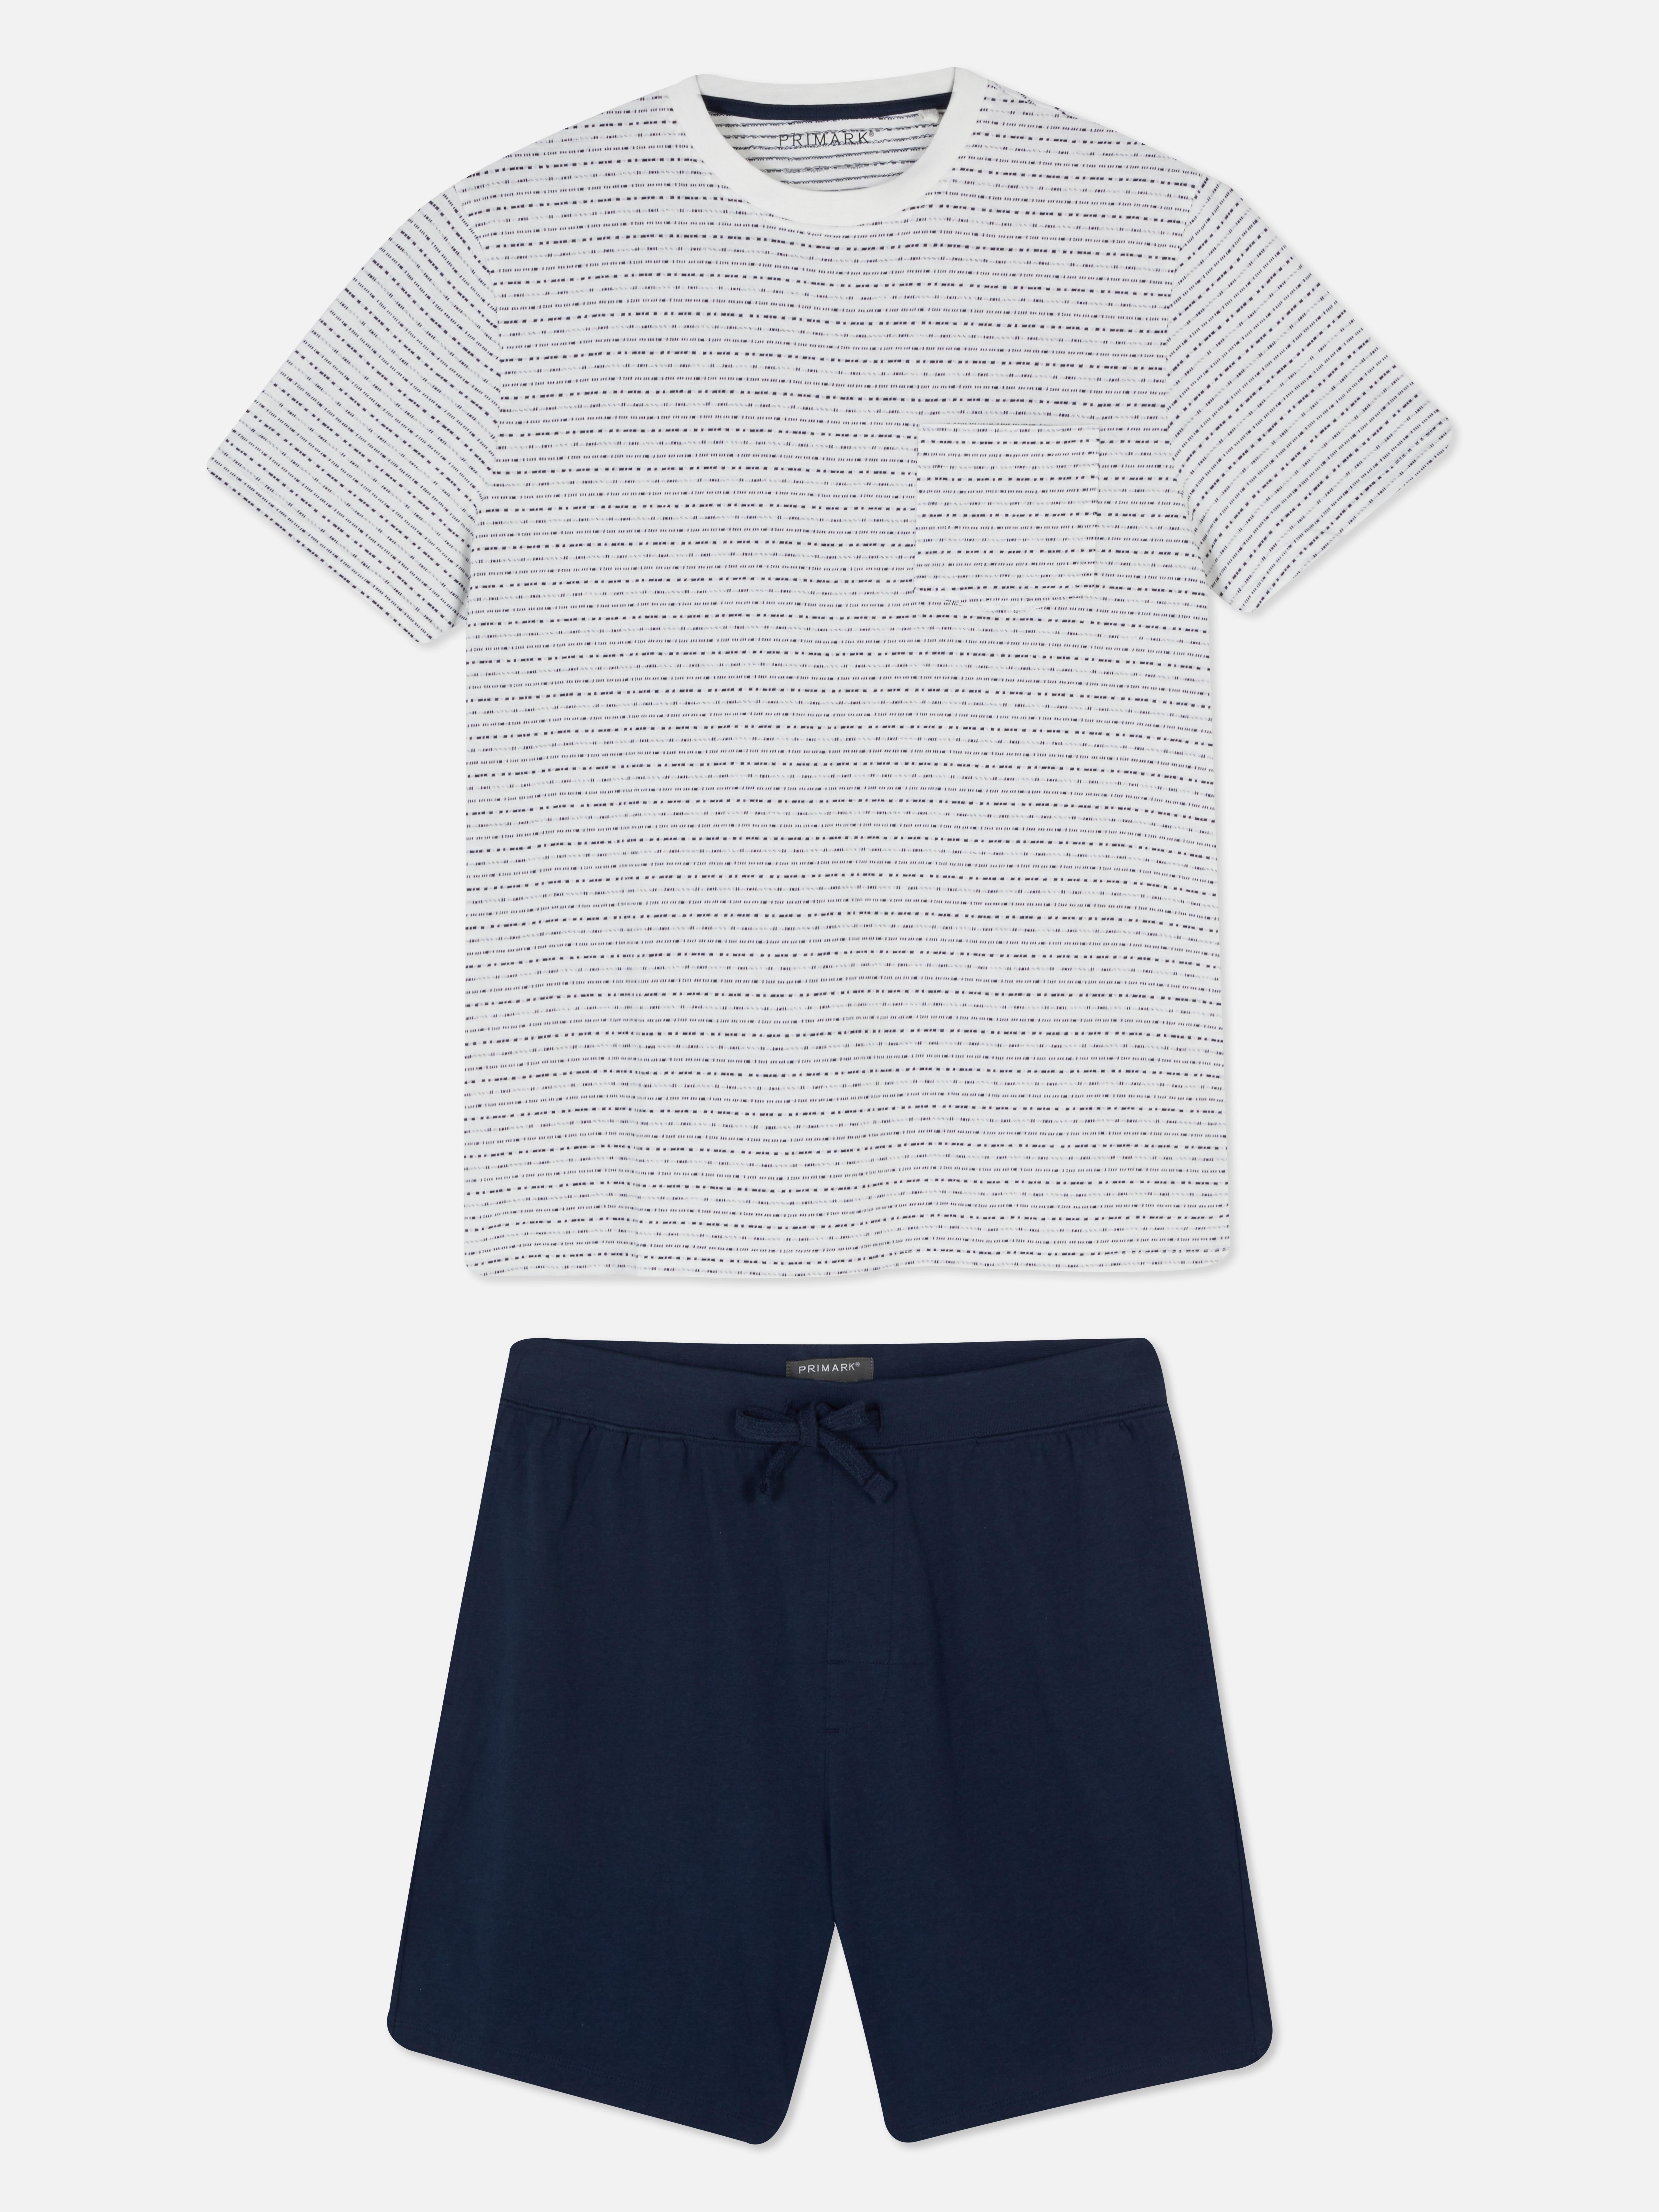 Shorts and T-shirt Pajama Set